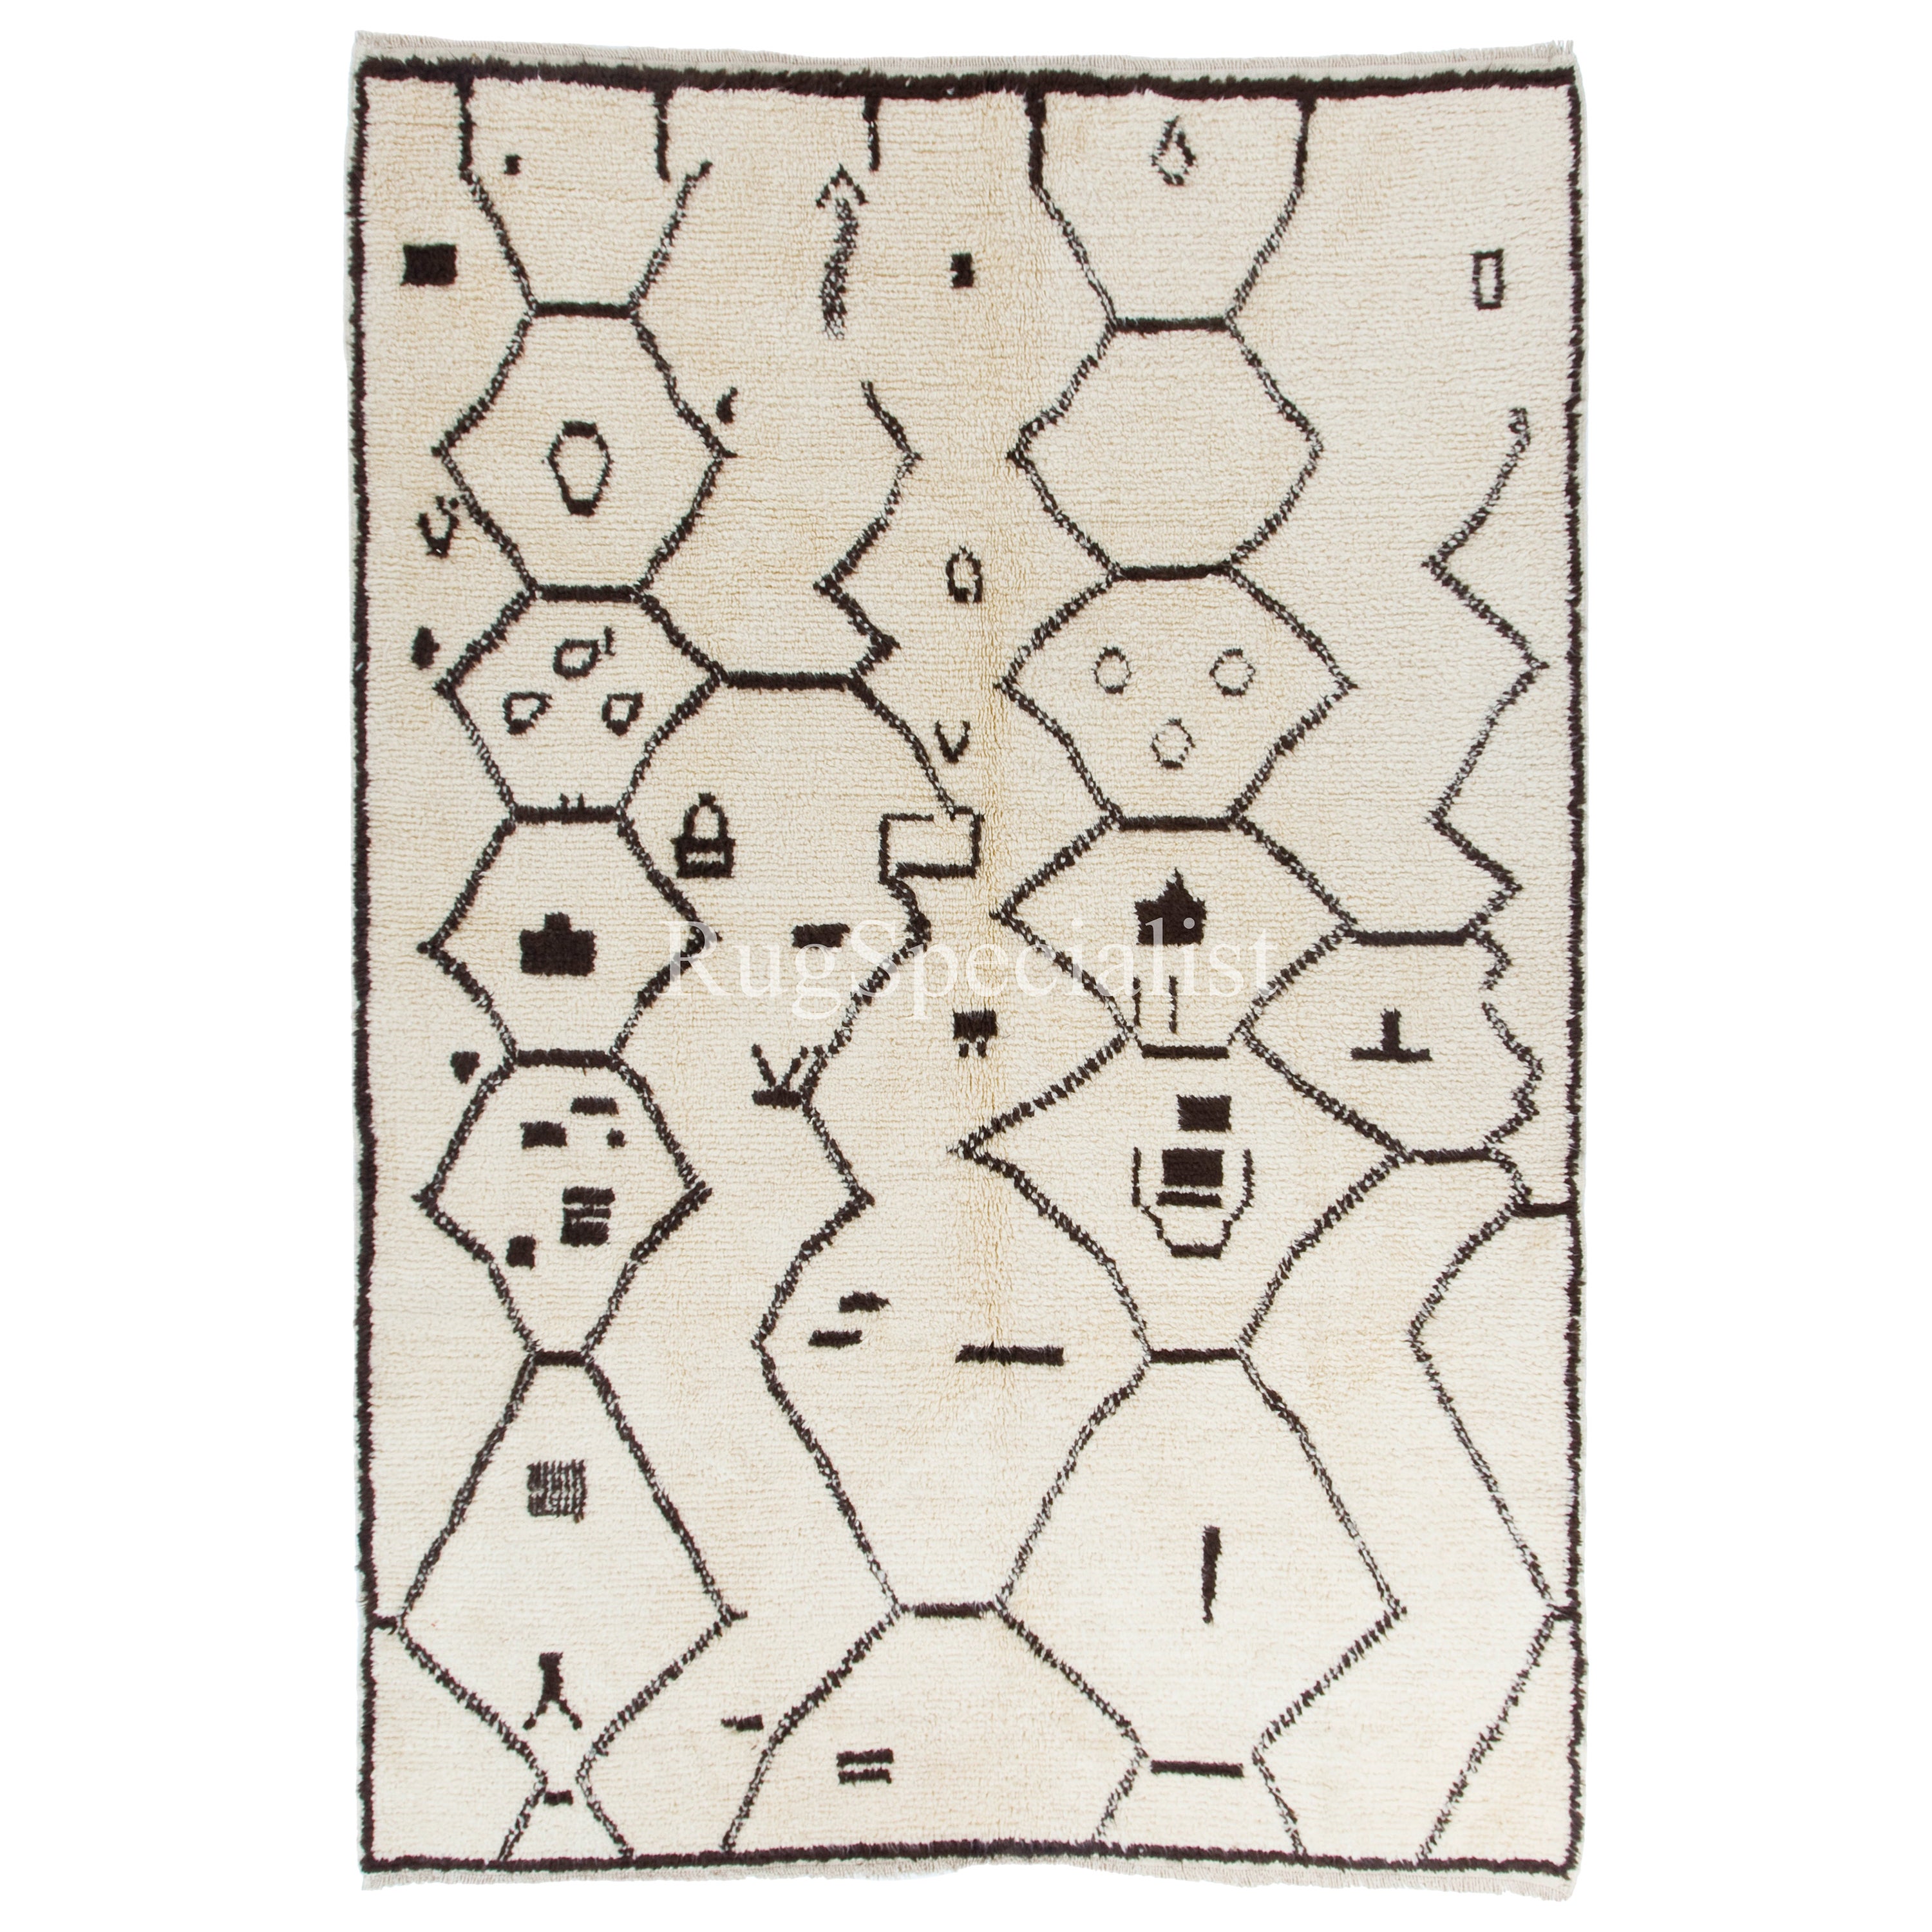 Marokkanischer Teppich. 100% natürliche Wolle. Beni Ourain Berberteppich in Elfenbein & Dunkelbraun